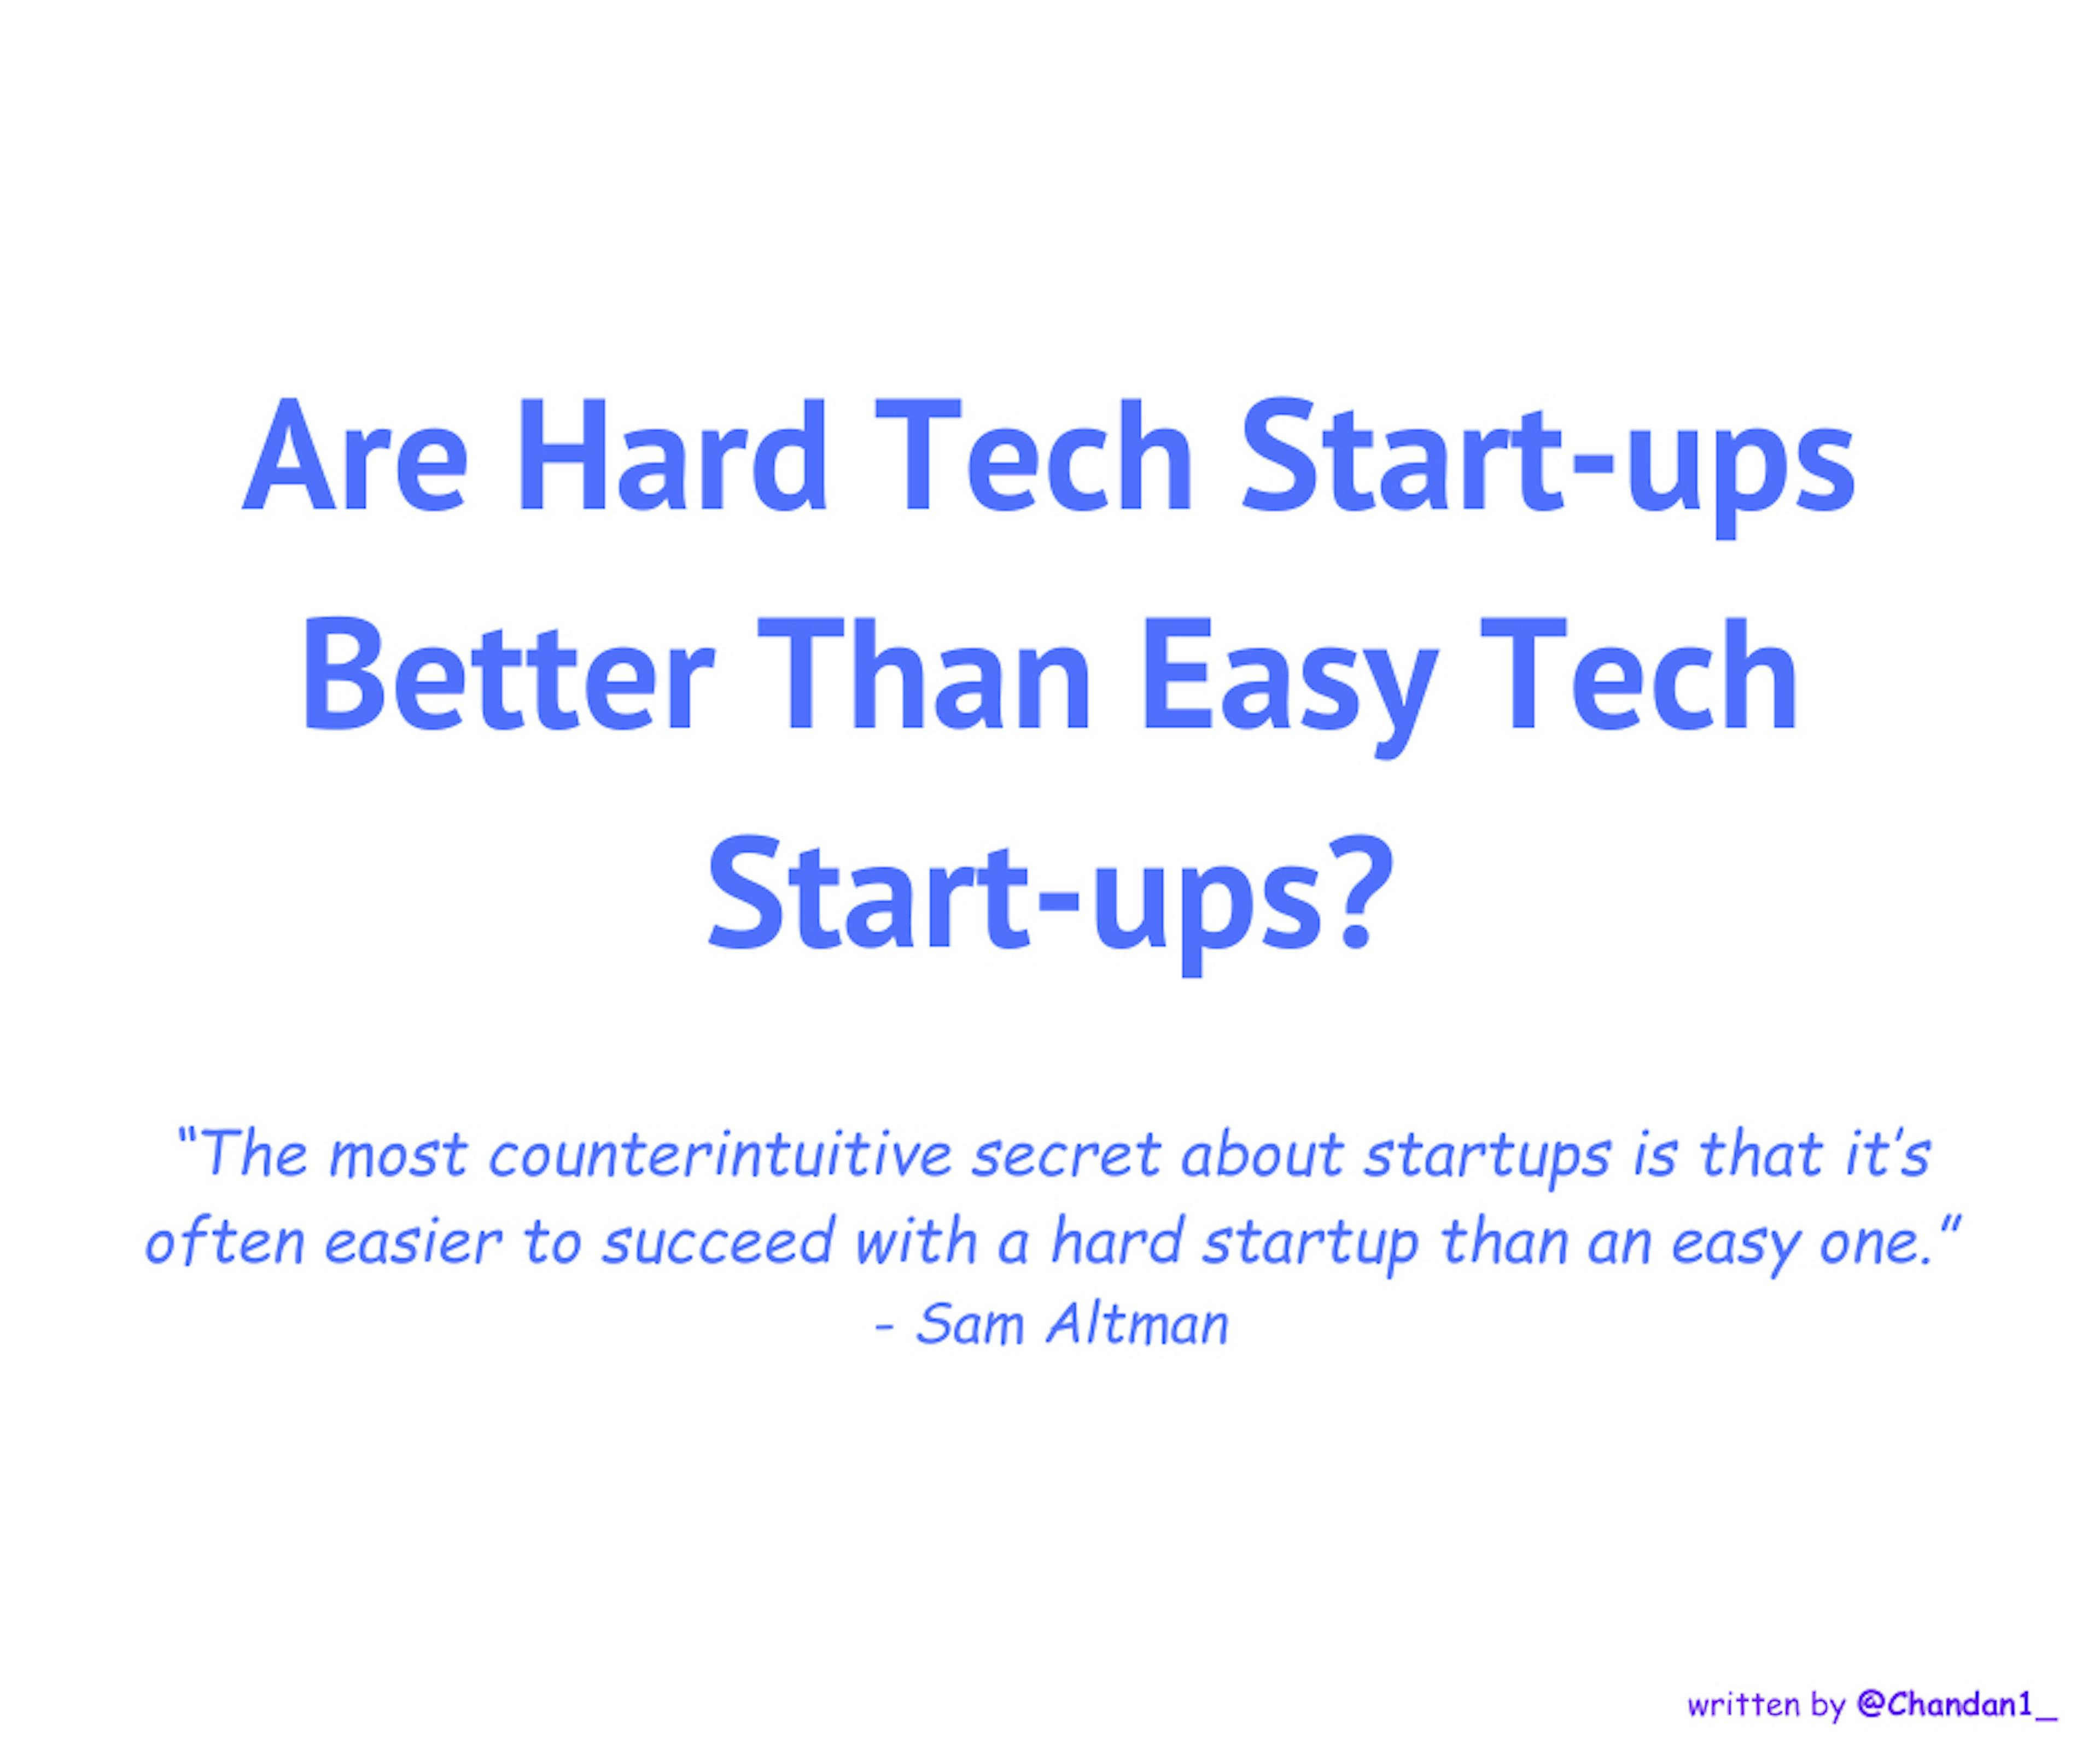 /are-hard-tech-start-ups-better-than-easy-tech-start-ups feature image